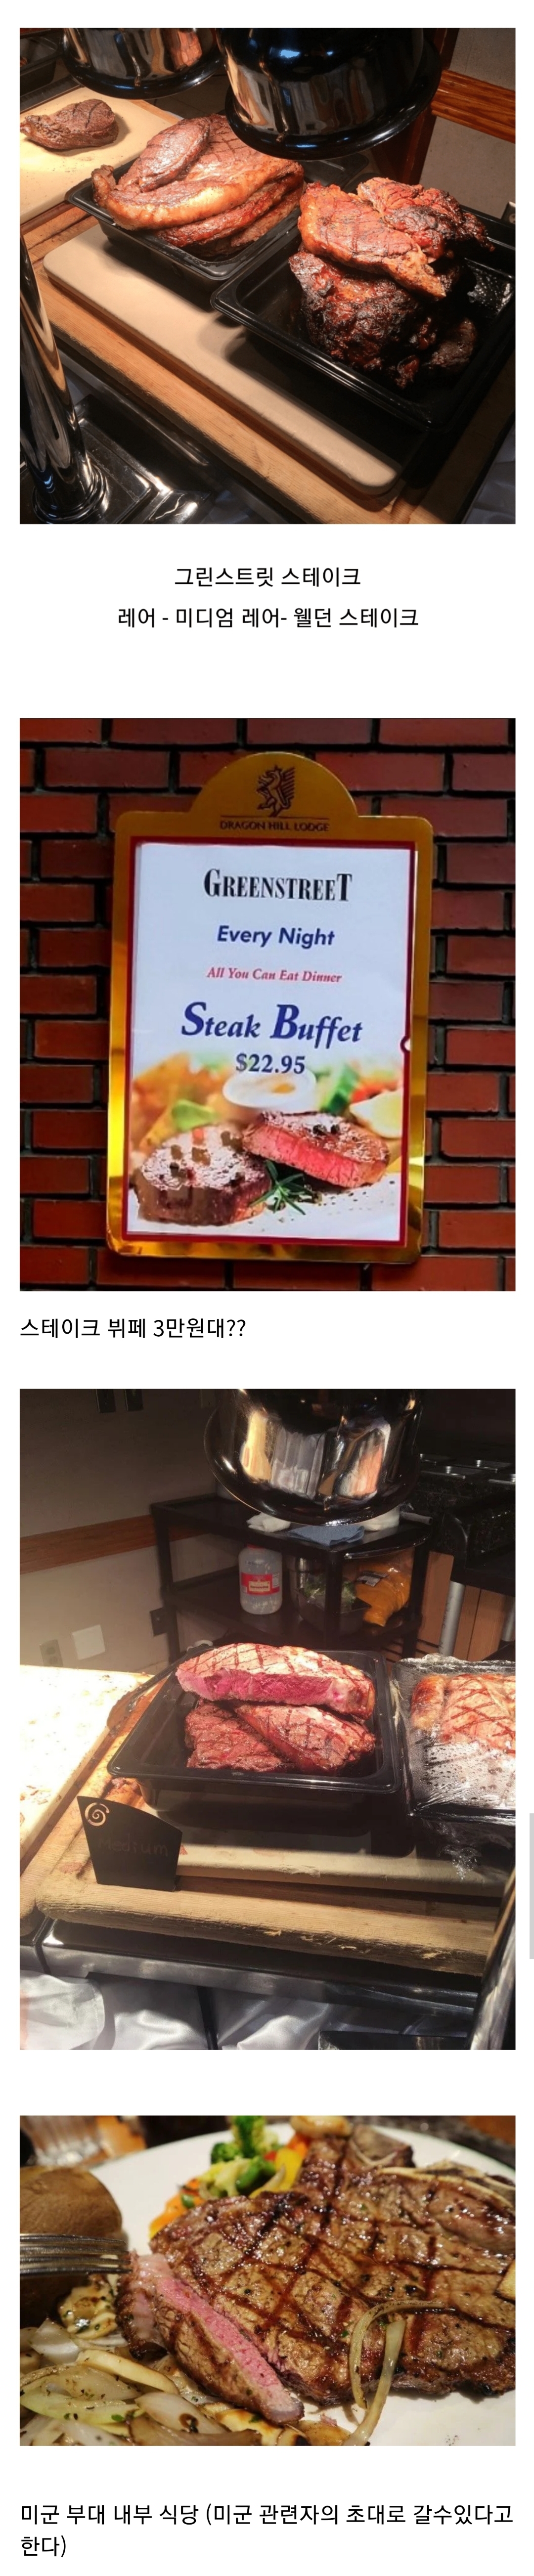 한국에서 미국식 스테이크 제일 싸게 먹을 수 있는 곳